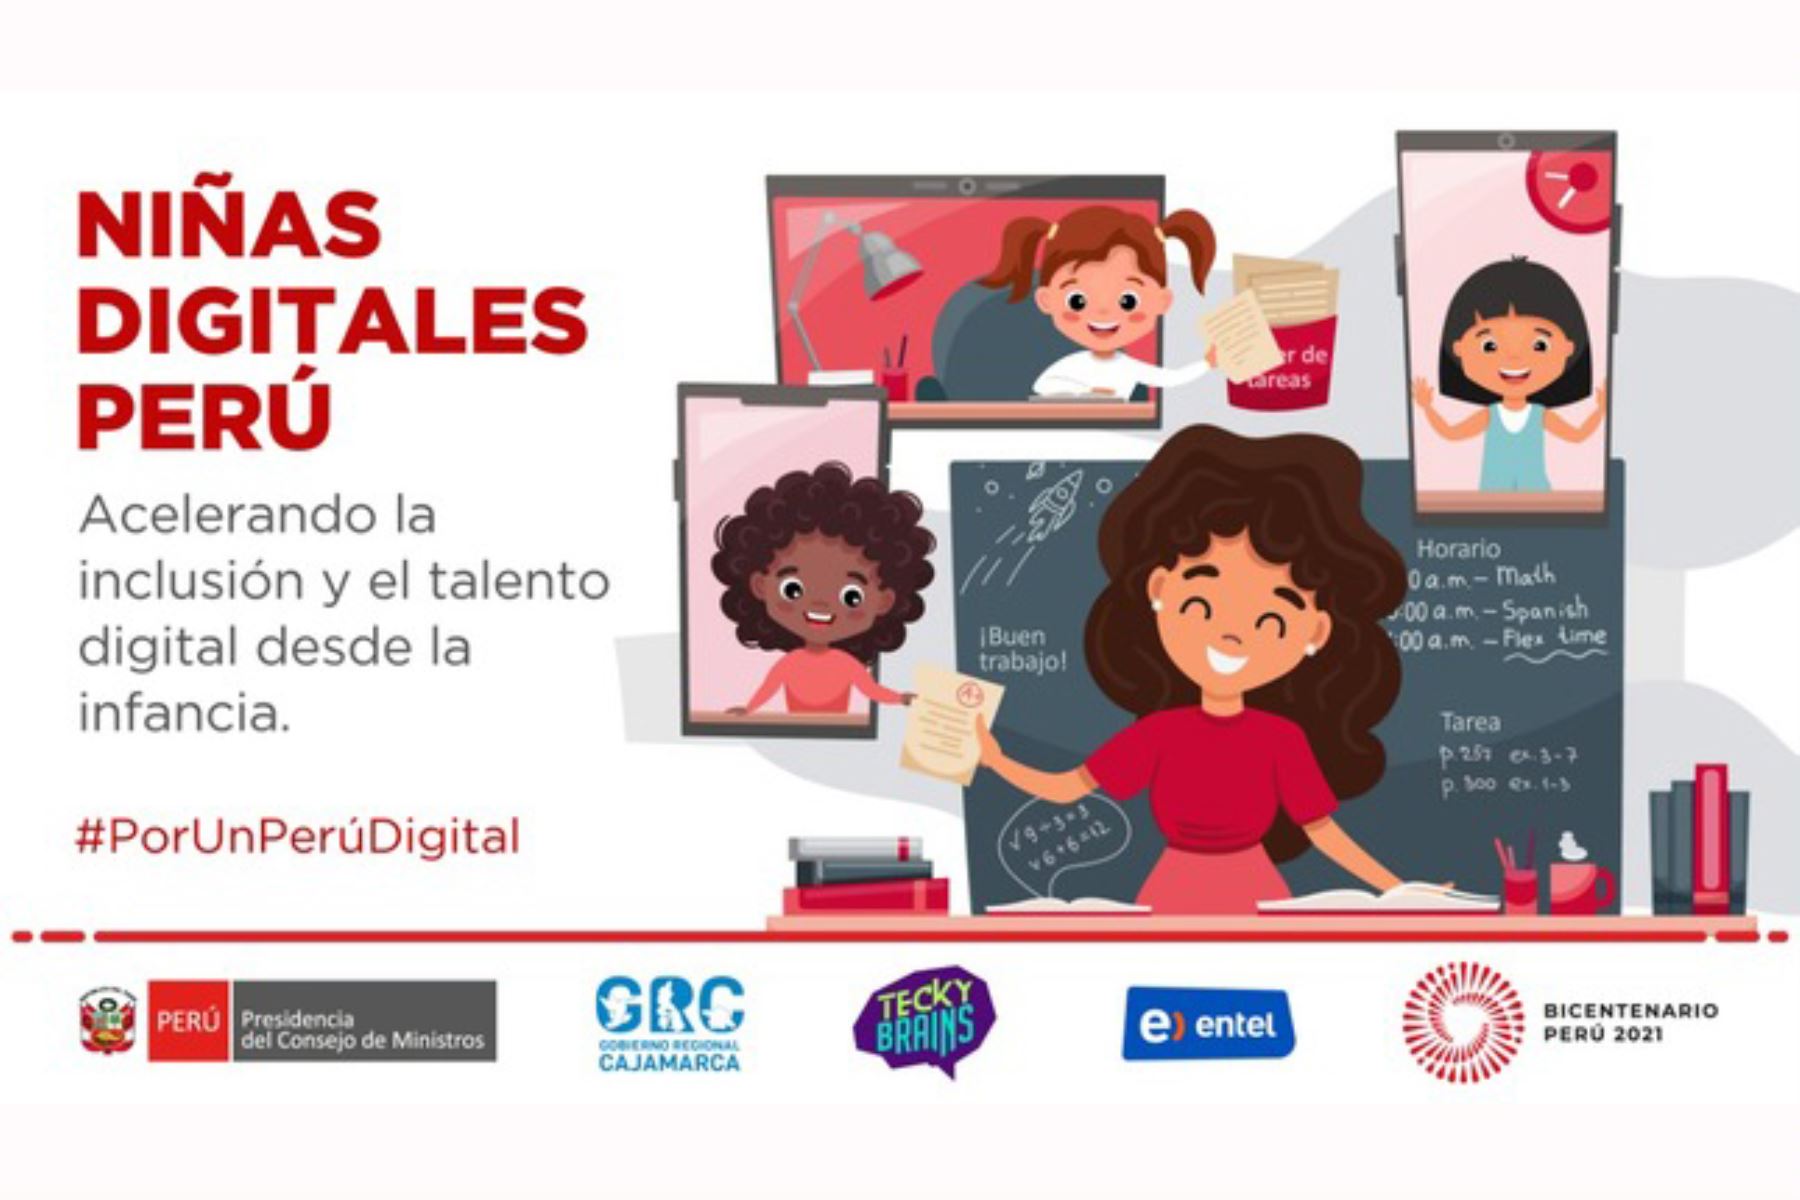 La primera fase del programa se realizará en noviembre y se prevé capacitar a 400 niñas de los distritos de Celendín, Jaén, Santa Cruz, Chota, entre otros.